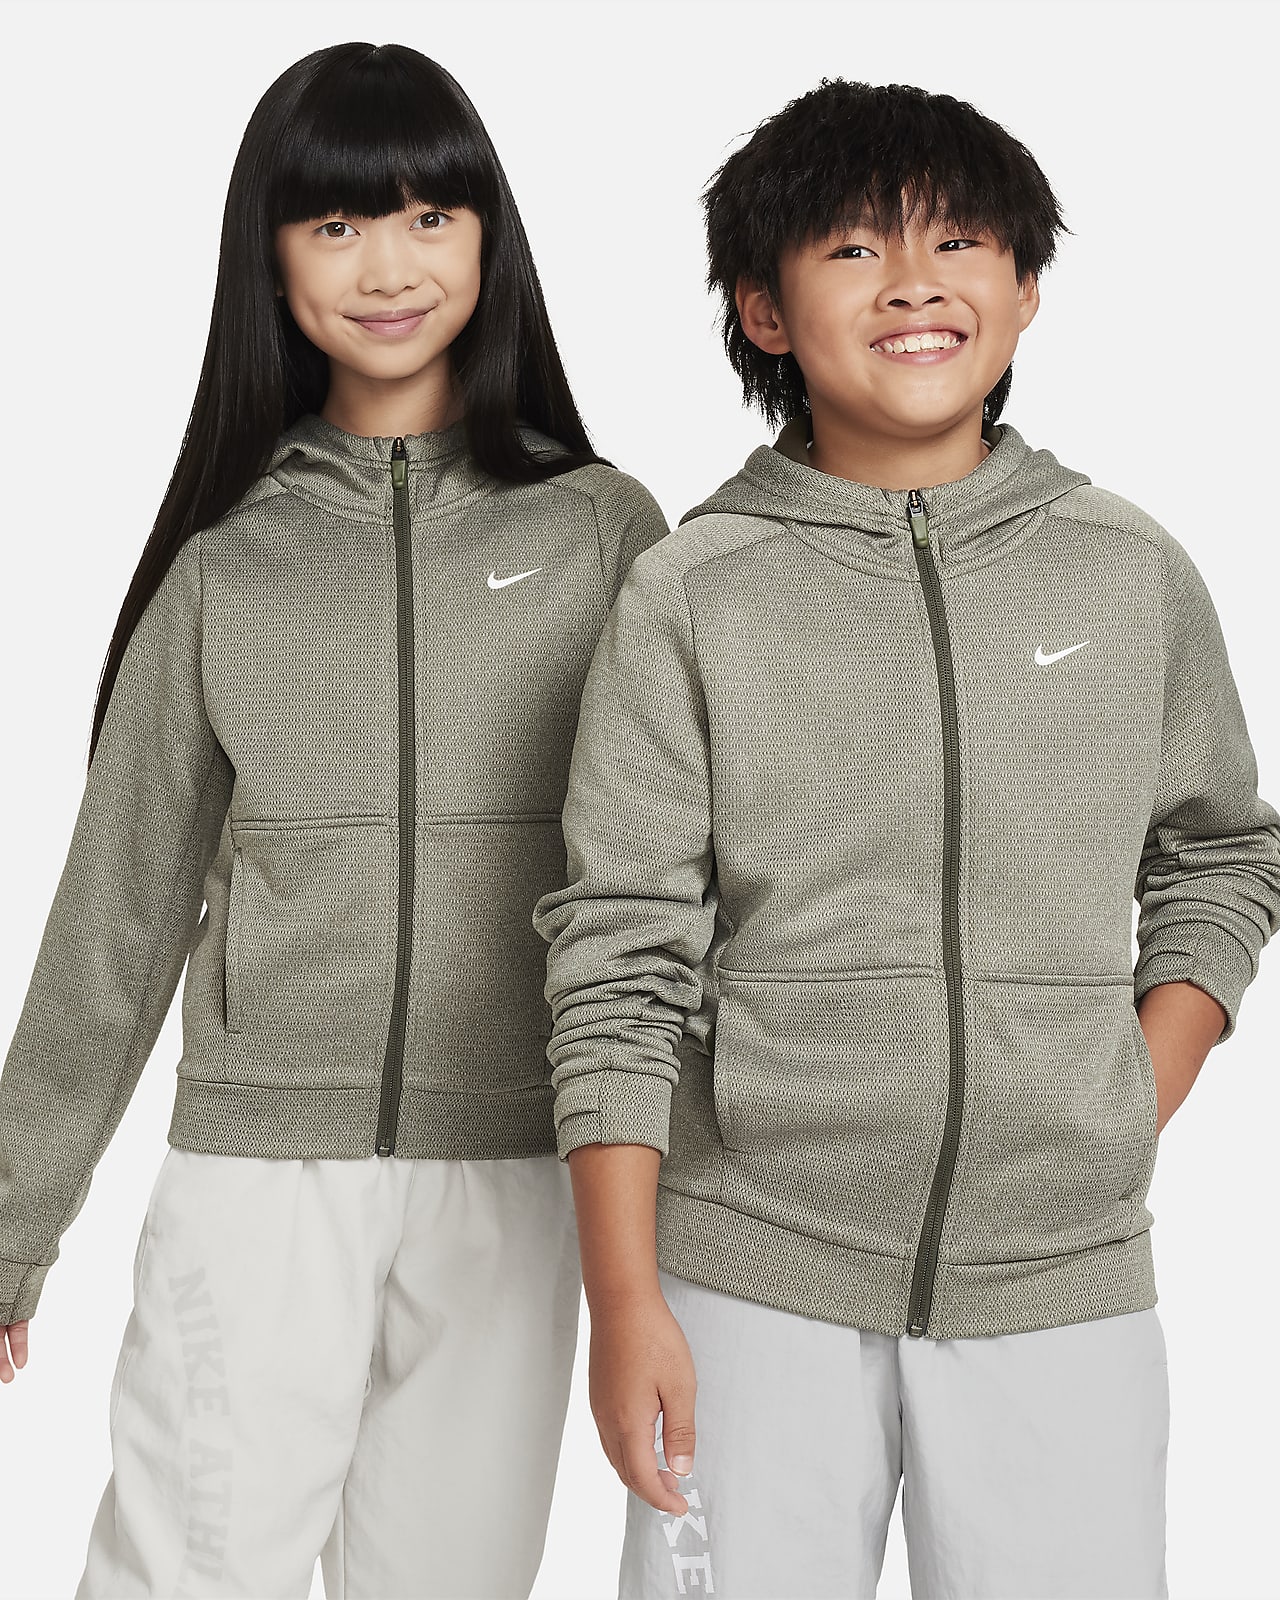 Nike Therma-FIT Sudadera con capucha y cremallera completa - Niño/a